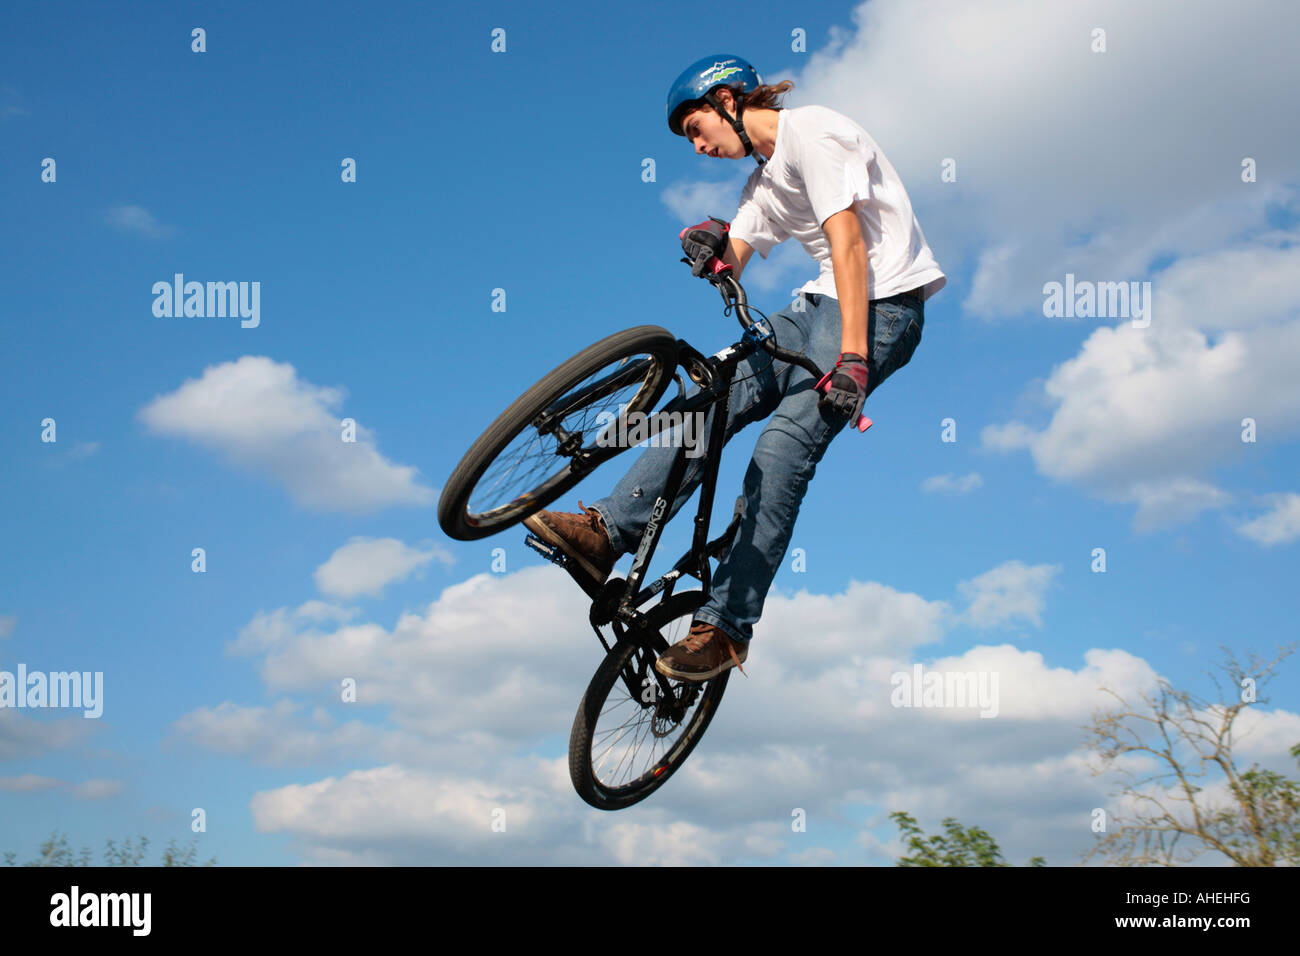 Une adolescente biker jumping avec son vélo Banque D'Images